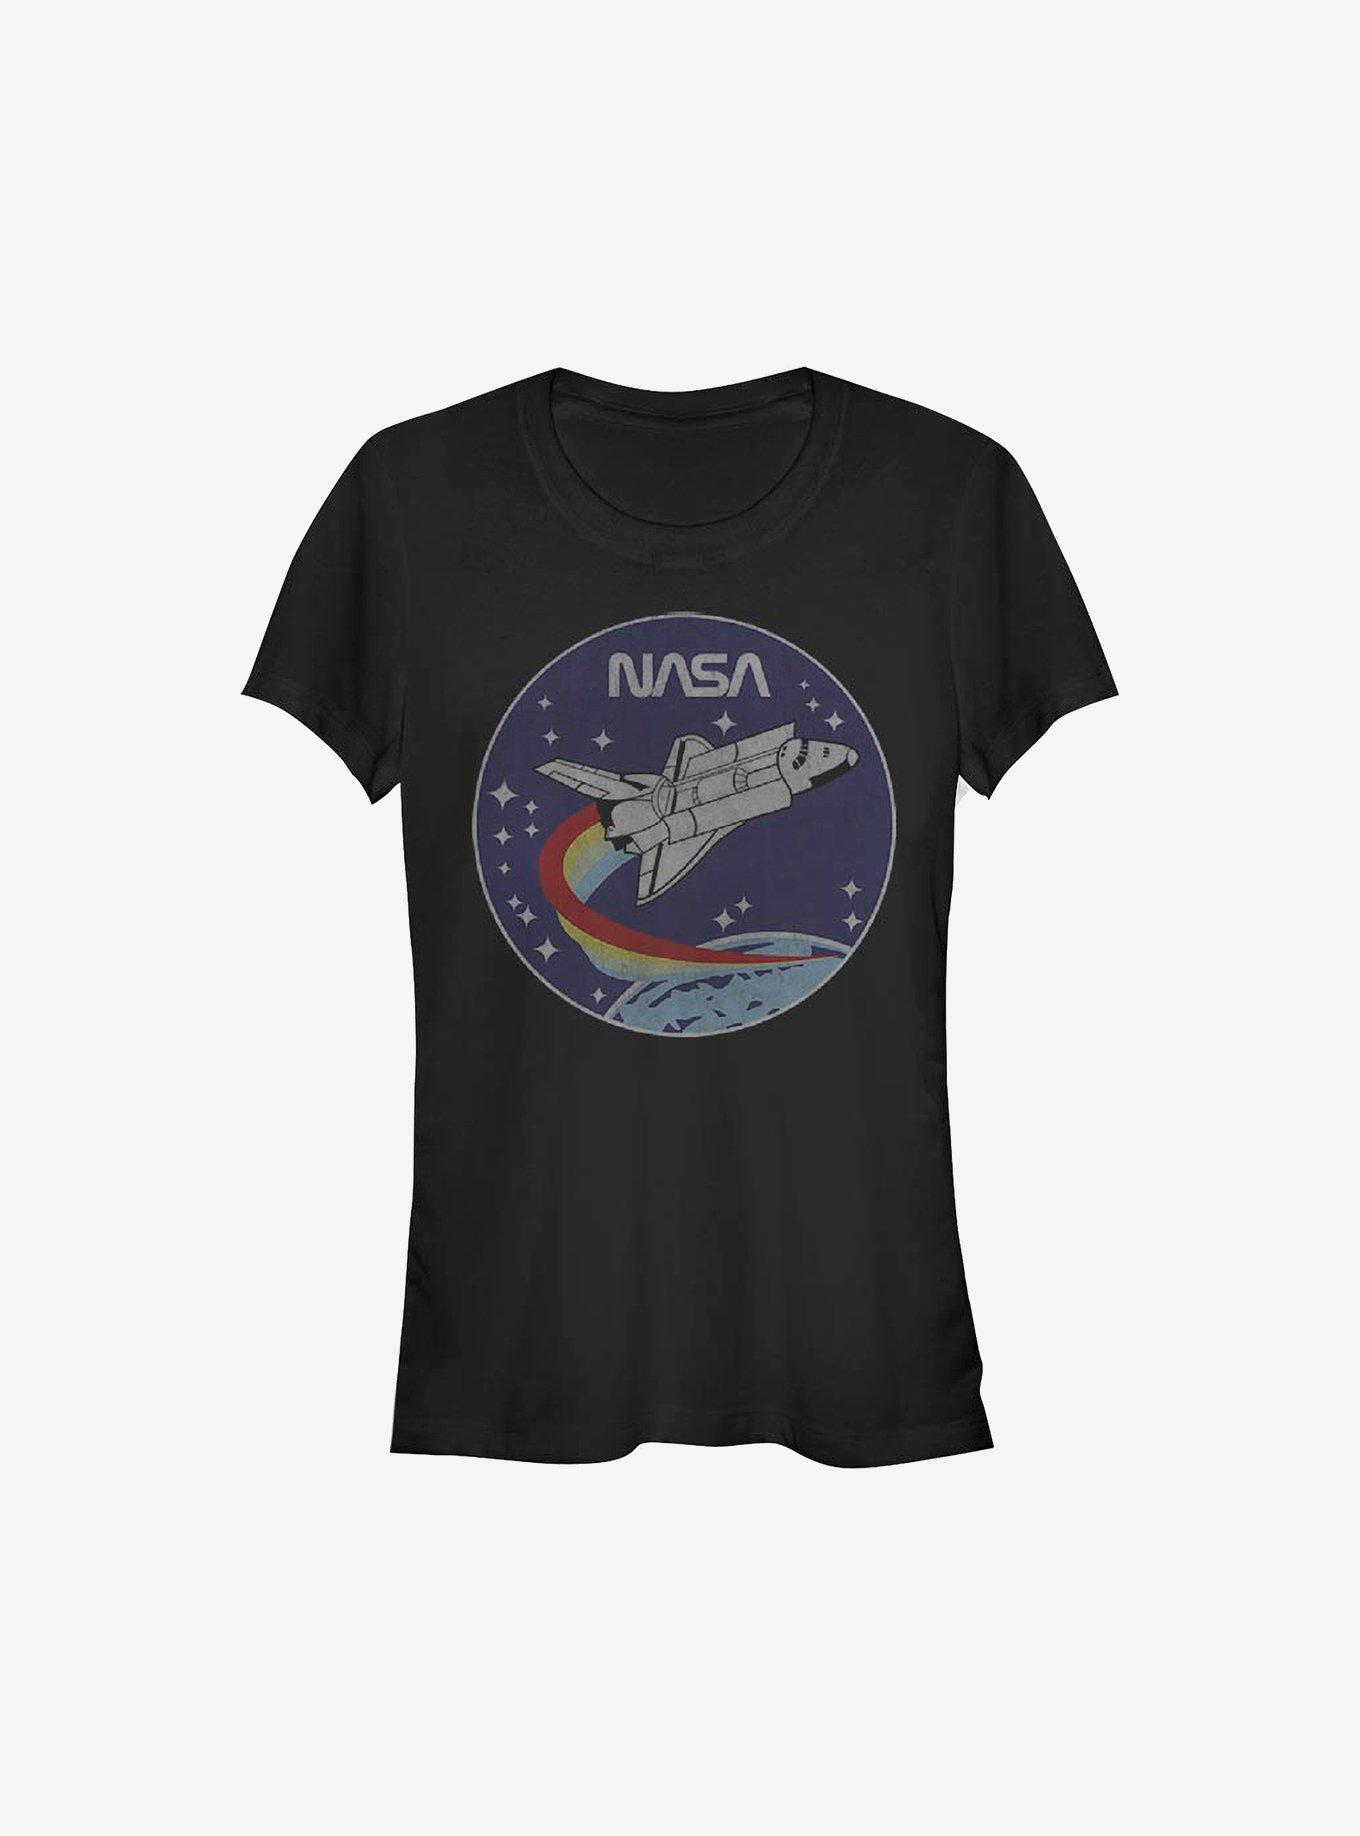 NASA Patch Girls T-Shirt, BLACK, hi-res